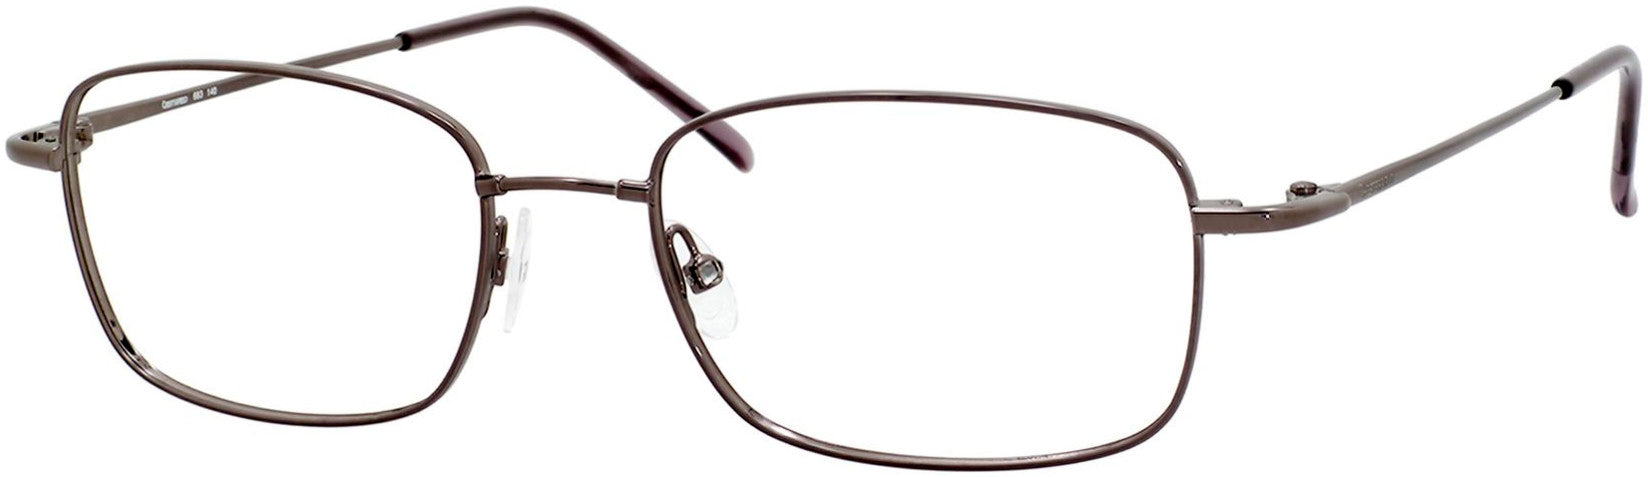  Chesterfield 683 Rectangular Eyeglasses 0TZ2-0TZ2  Gunmetal (00 Demo Lens)